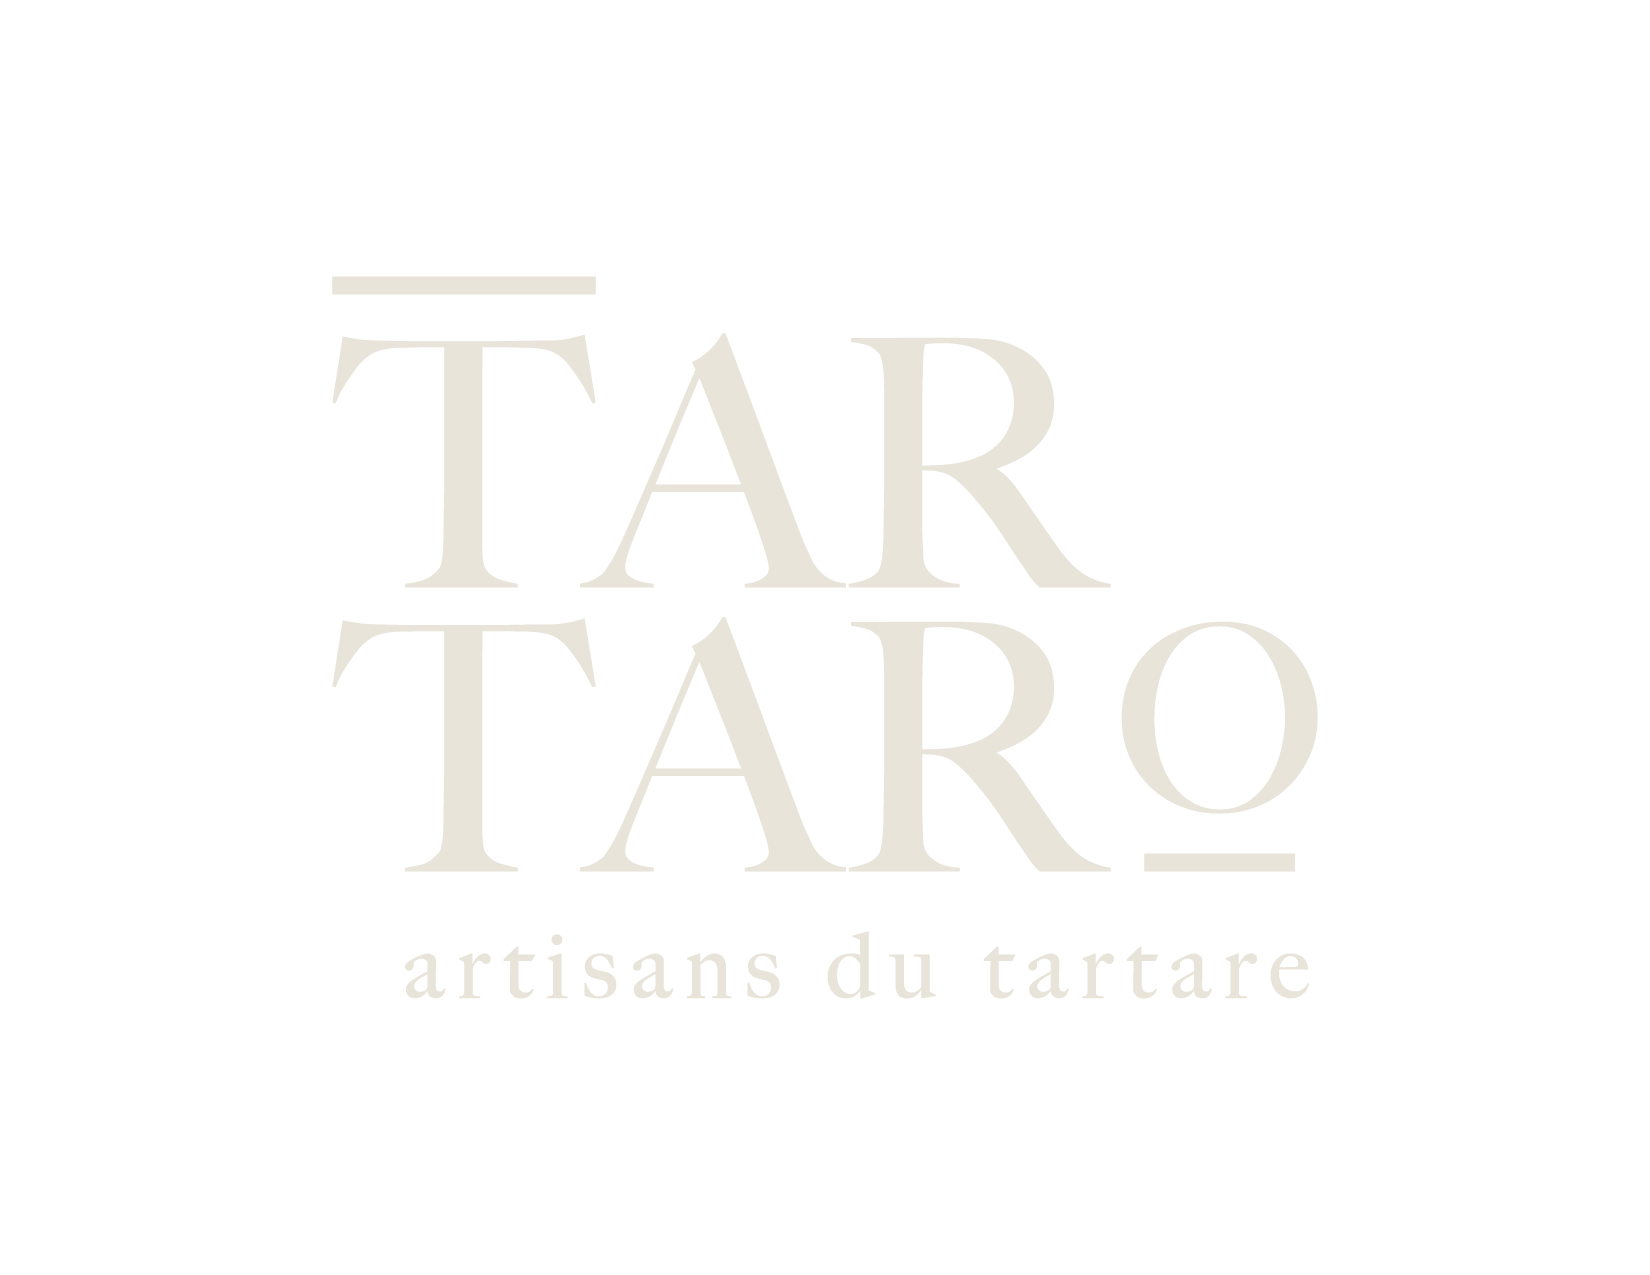 Tartaro